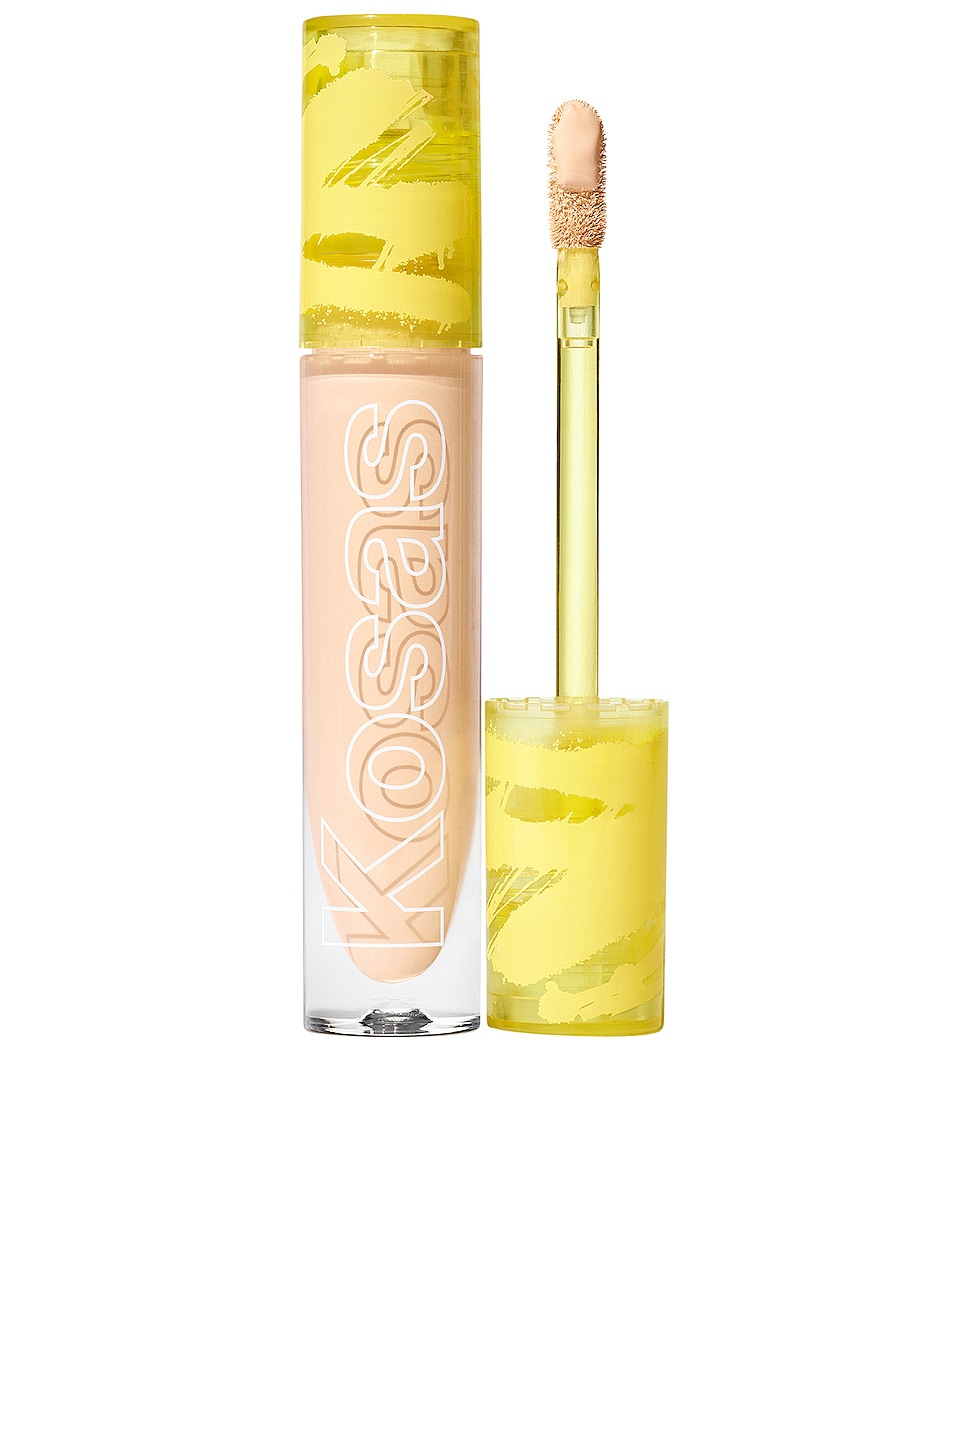 Консилер Kosas Revealer Super Creamy + Brightening and Daytime Eye Cream, цвет 3 W classic norma 251x203 4 3 w 243x182 3 mw s0 w